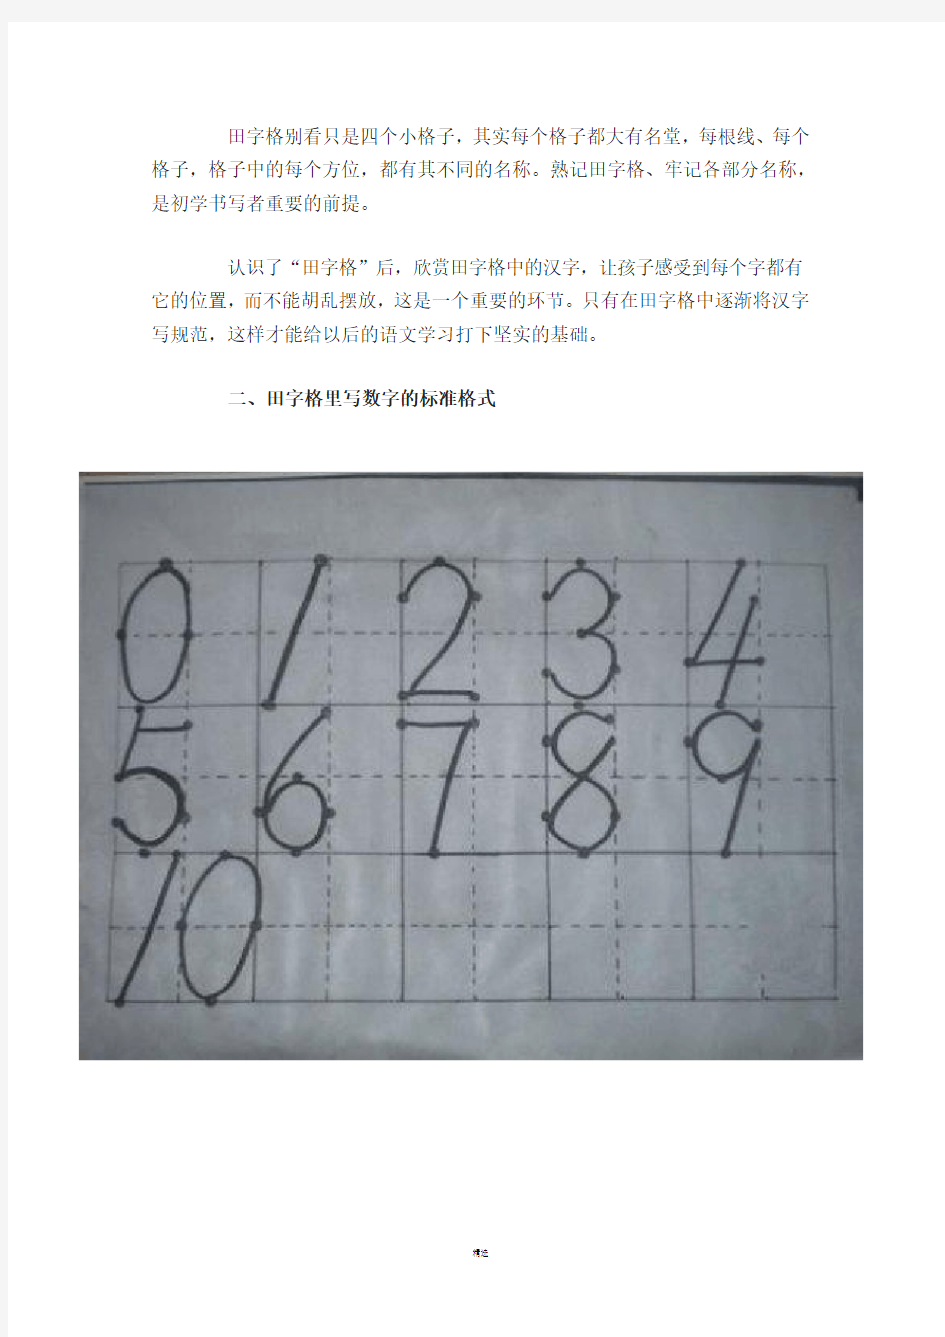 田字格里写数字和汉字(标准格式)